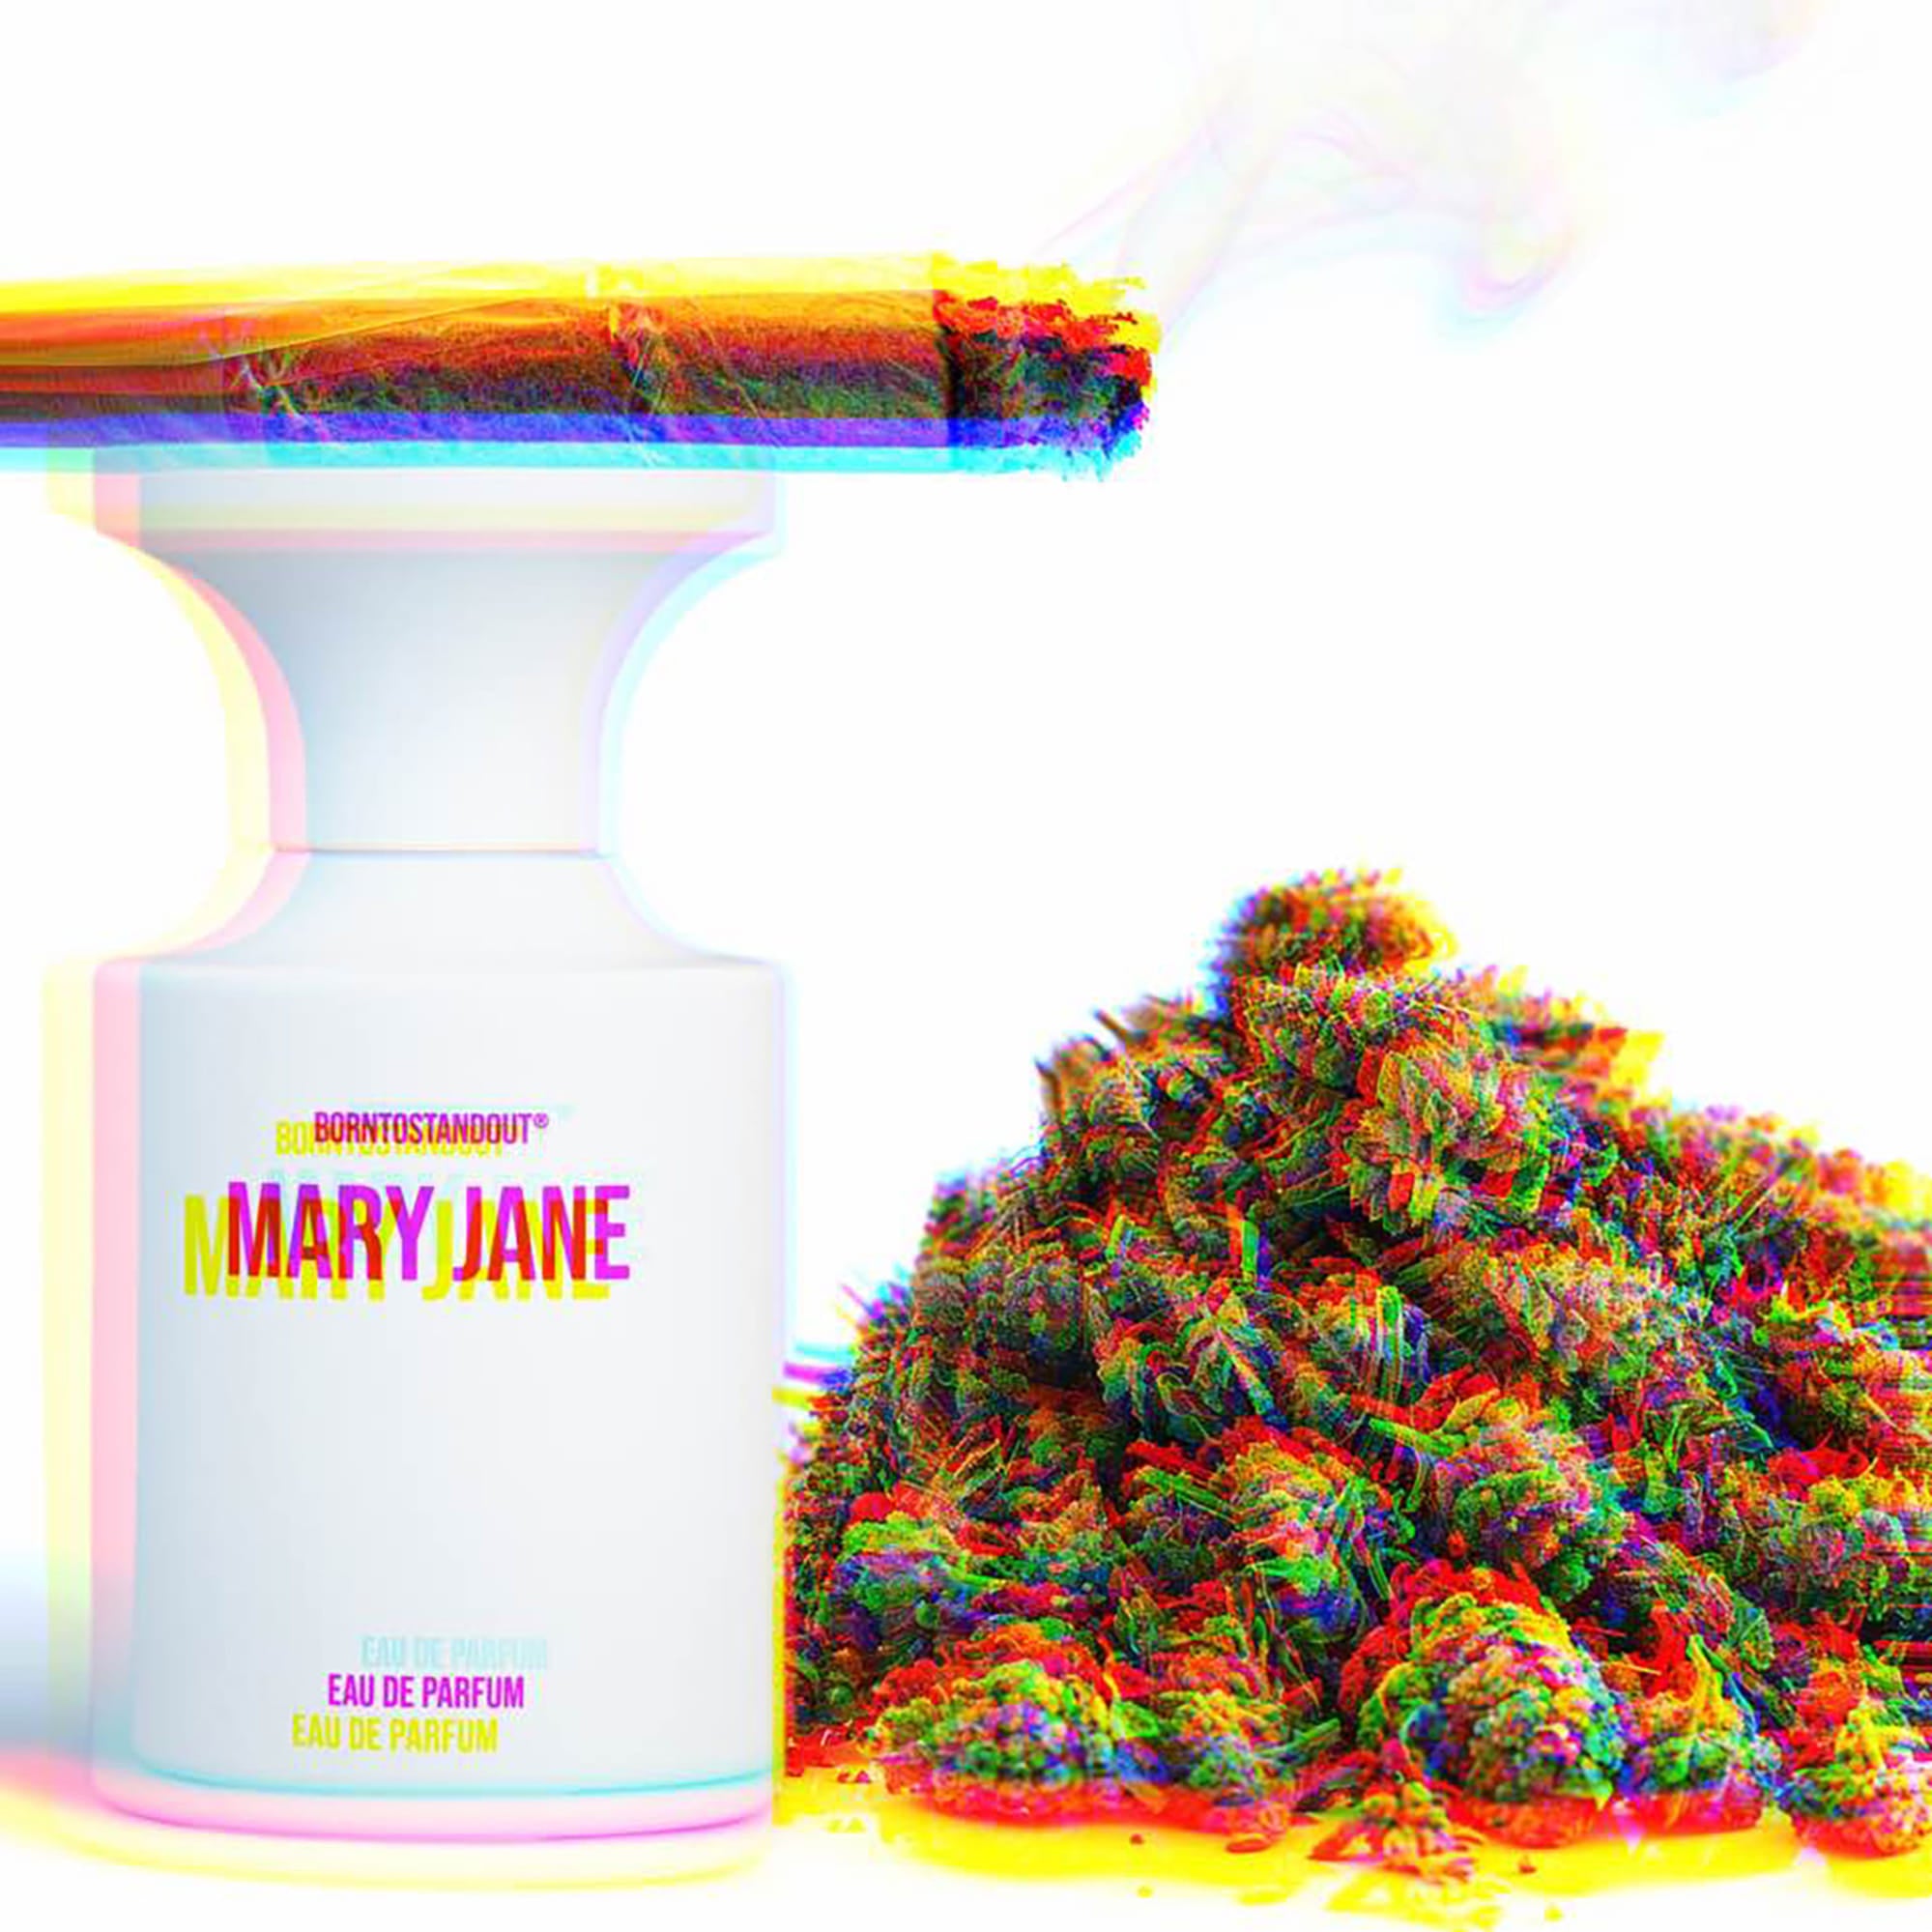 (Matt) BORNTOSTANDOUT Eau de Parfum 50ml #Mary Jane - DODOSKIN